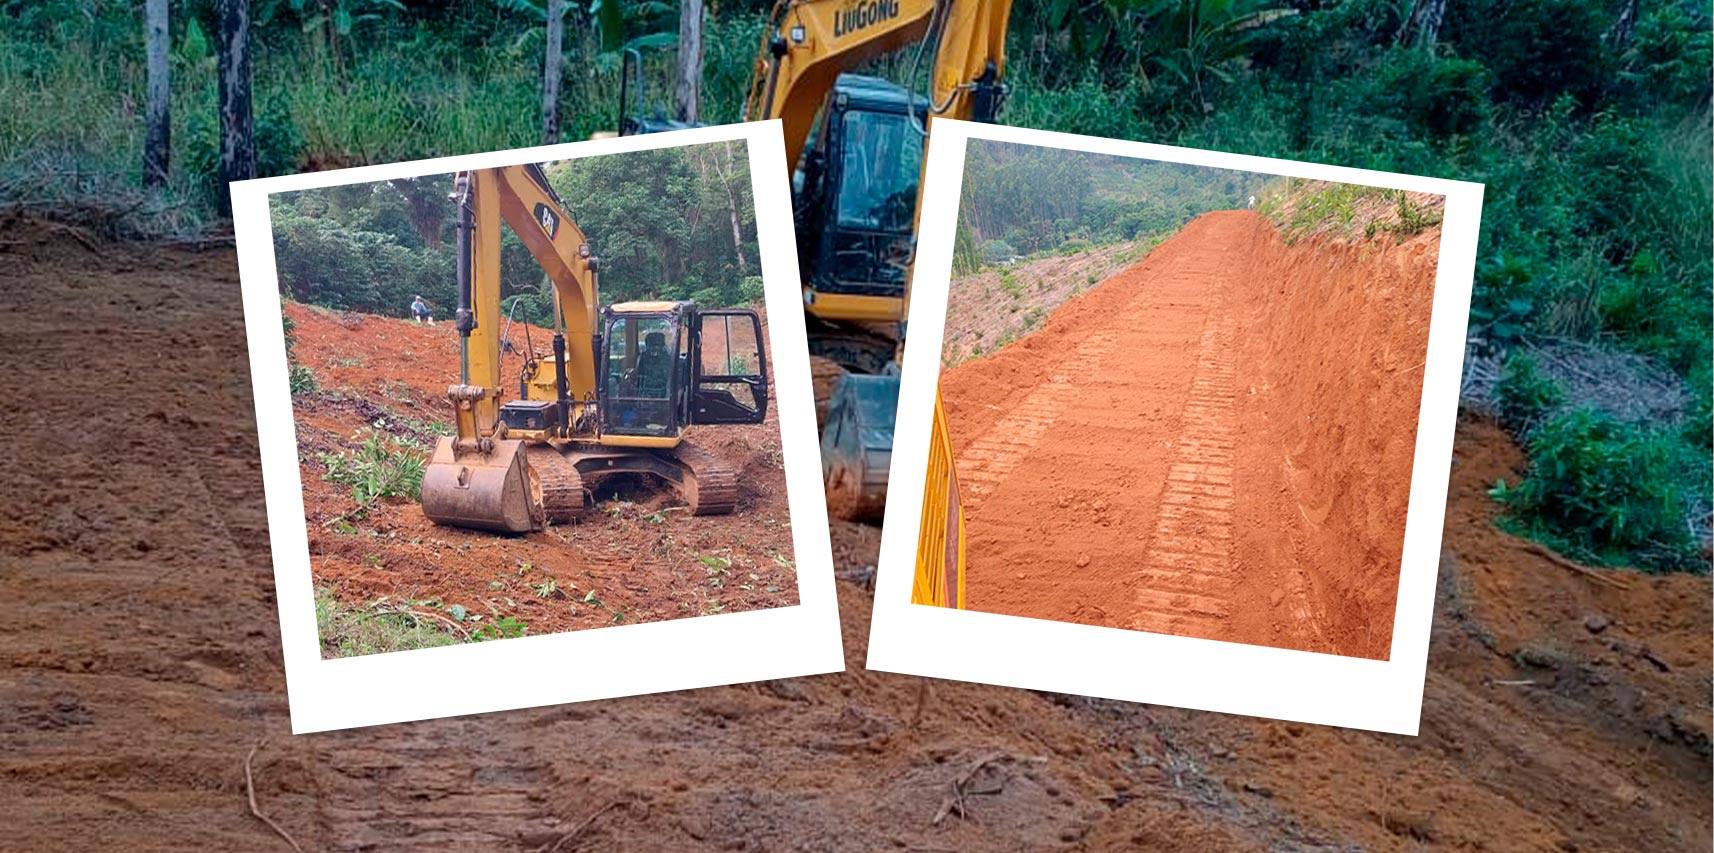 NOTÍCIA: Secretaria de Agricultura promove abertura de estradas rurais para melhorias de acesso às propriedades